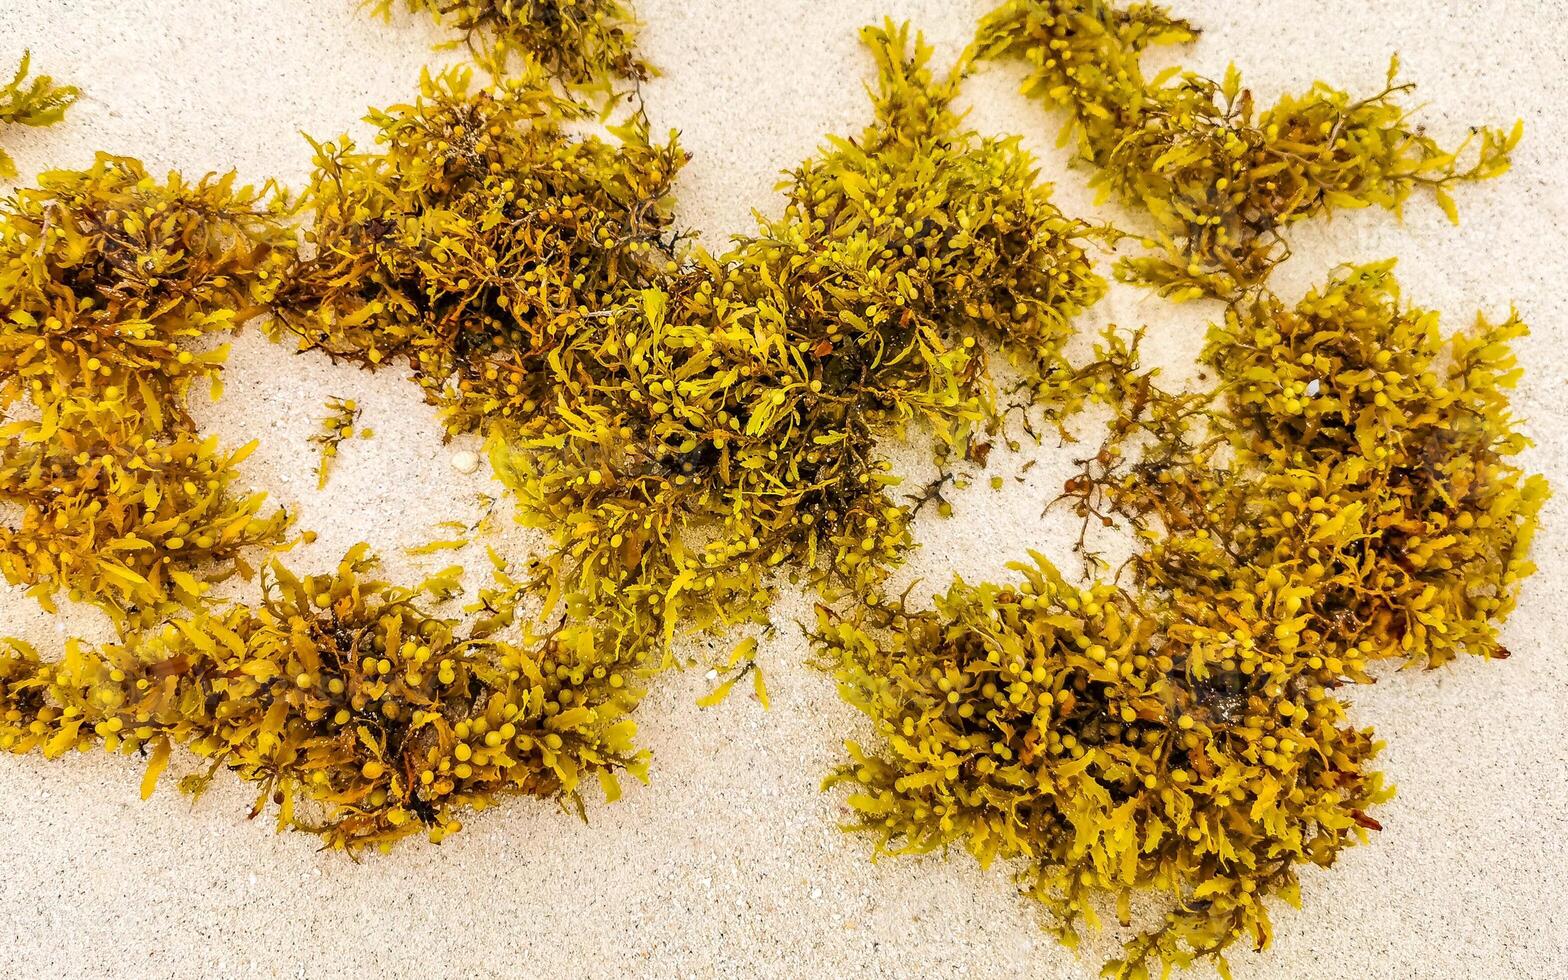 algas amarillas frescas pastos marinos playa sargazo playa del carmen méxico. foto